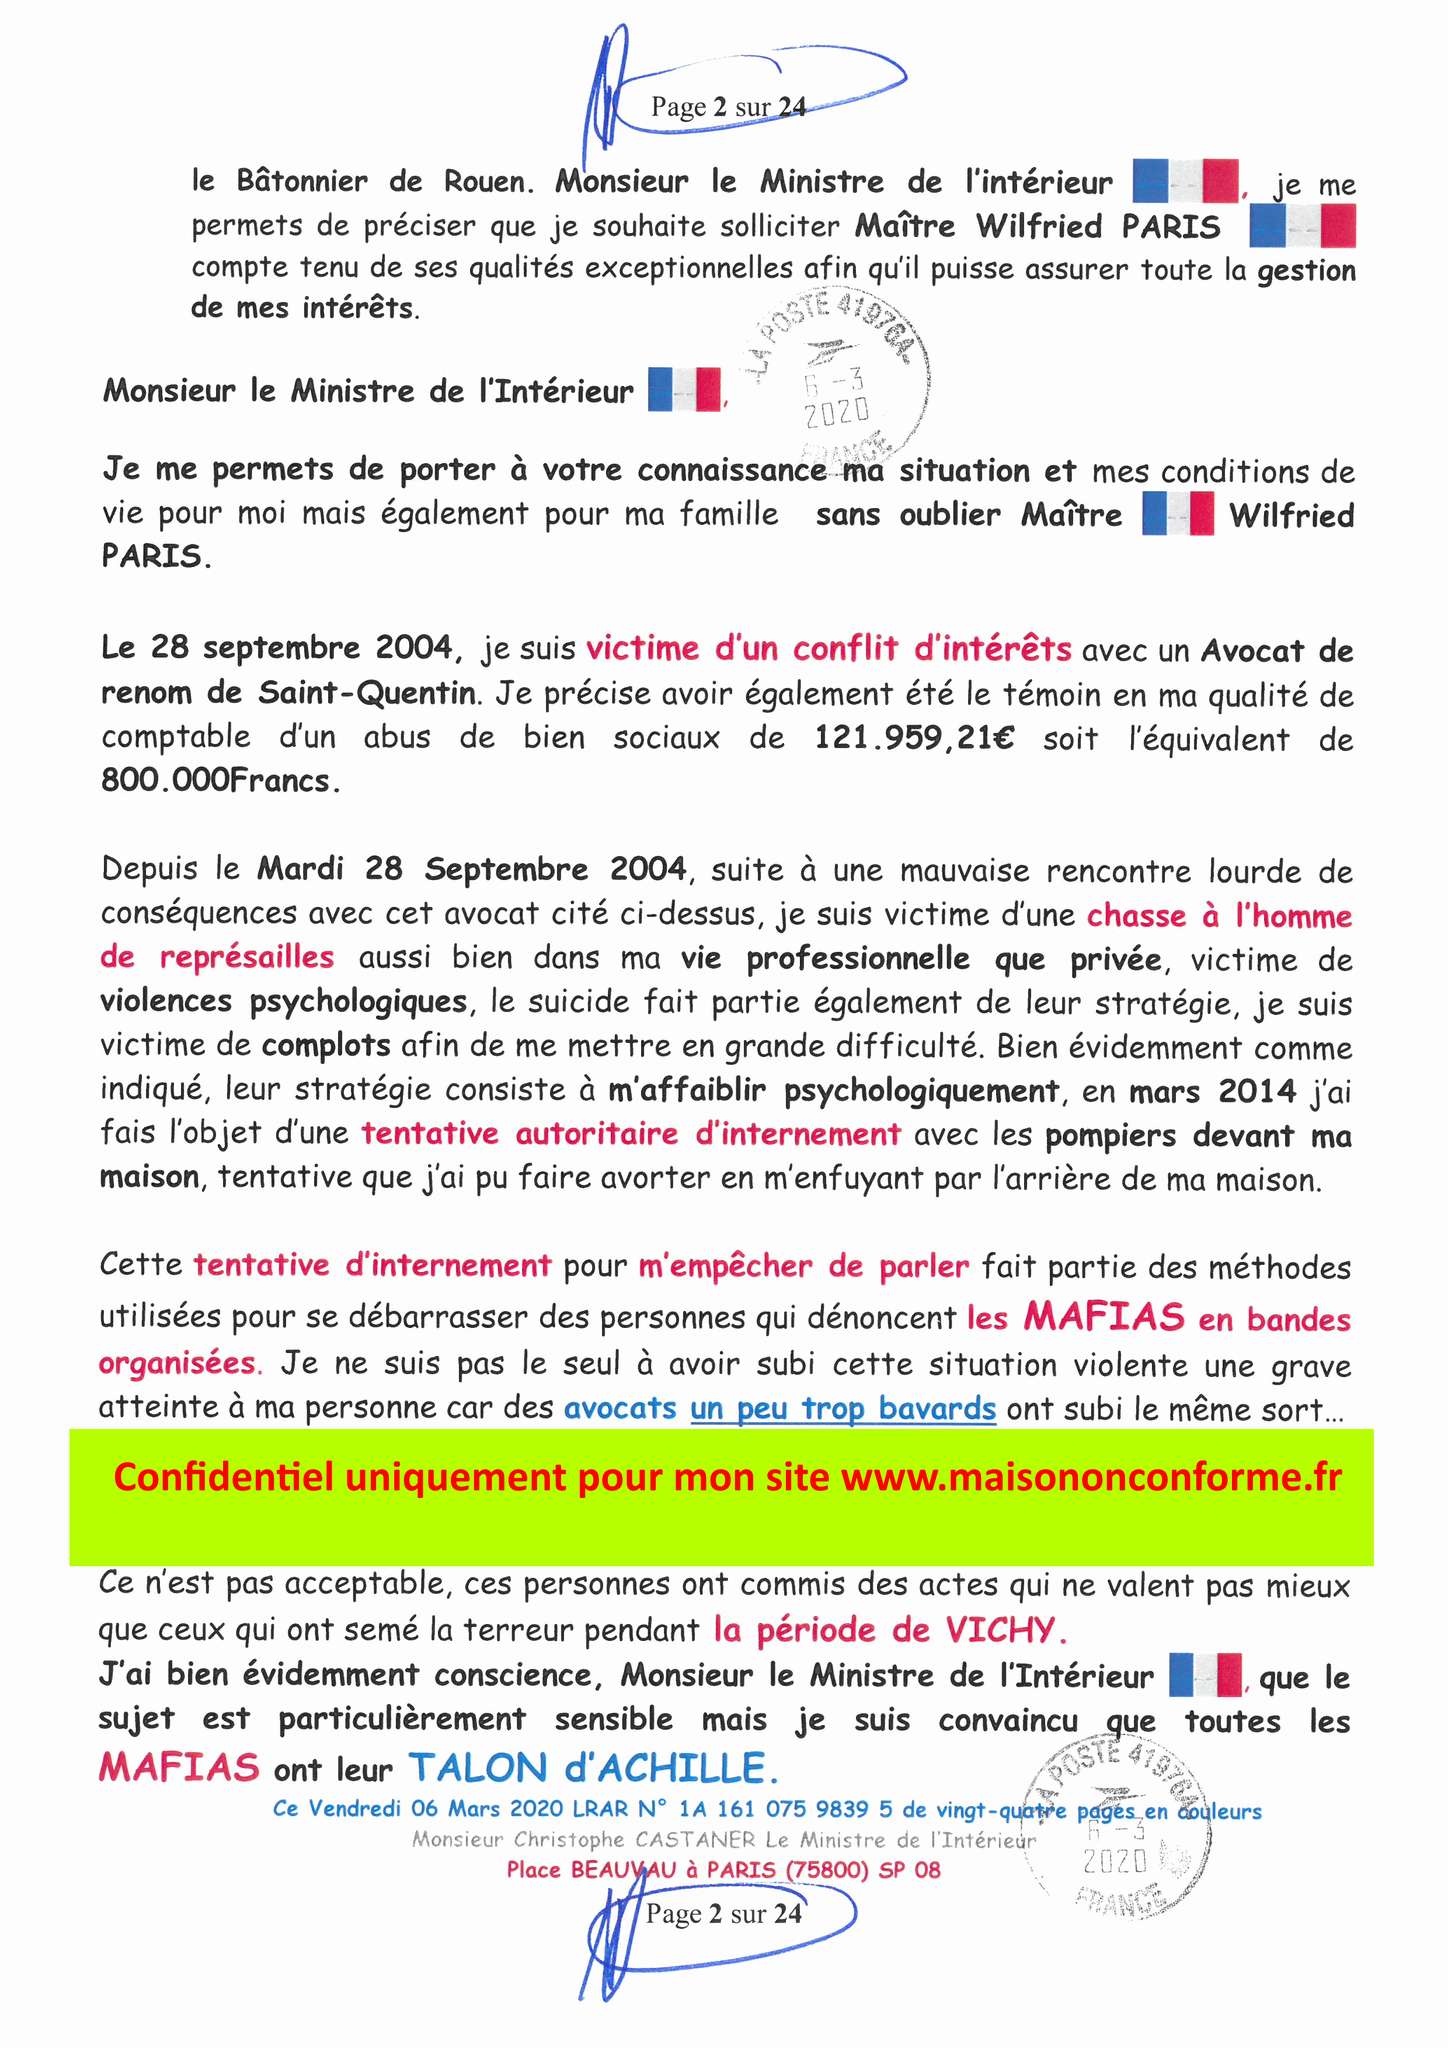 Ma LRAR à Monsieur le Ministre de l'Intérieur Christophe CASTANER N°1A 161 075 9839 5  Page 2 sur 24 en couleur du 06 Mars 2020  www.jesuispatrick.fr www.jesuisvictime.fr www.alerte-rouge-france.fr